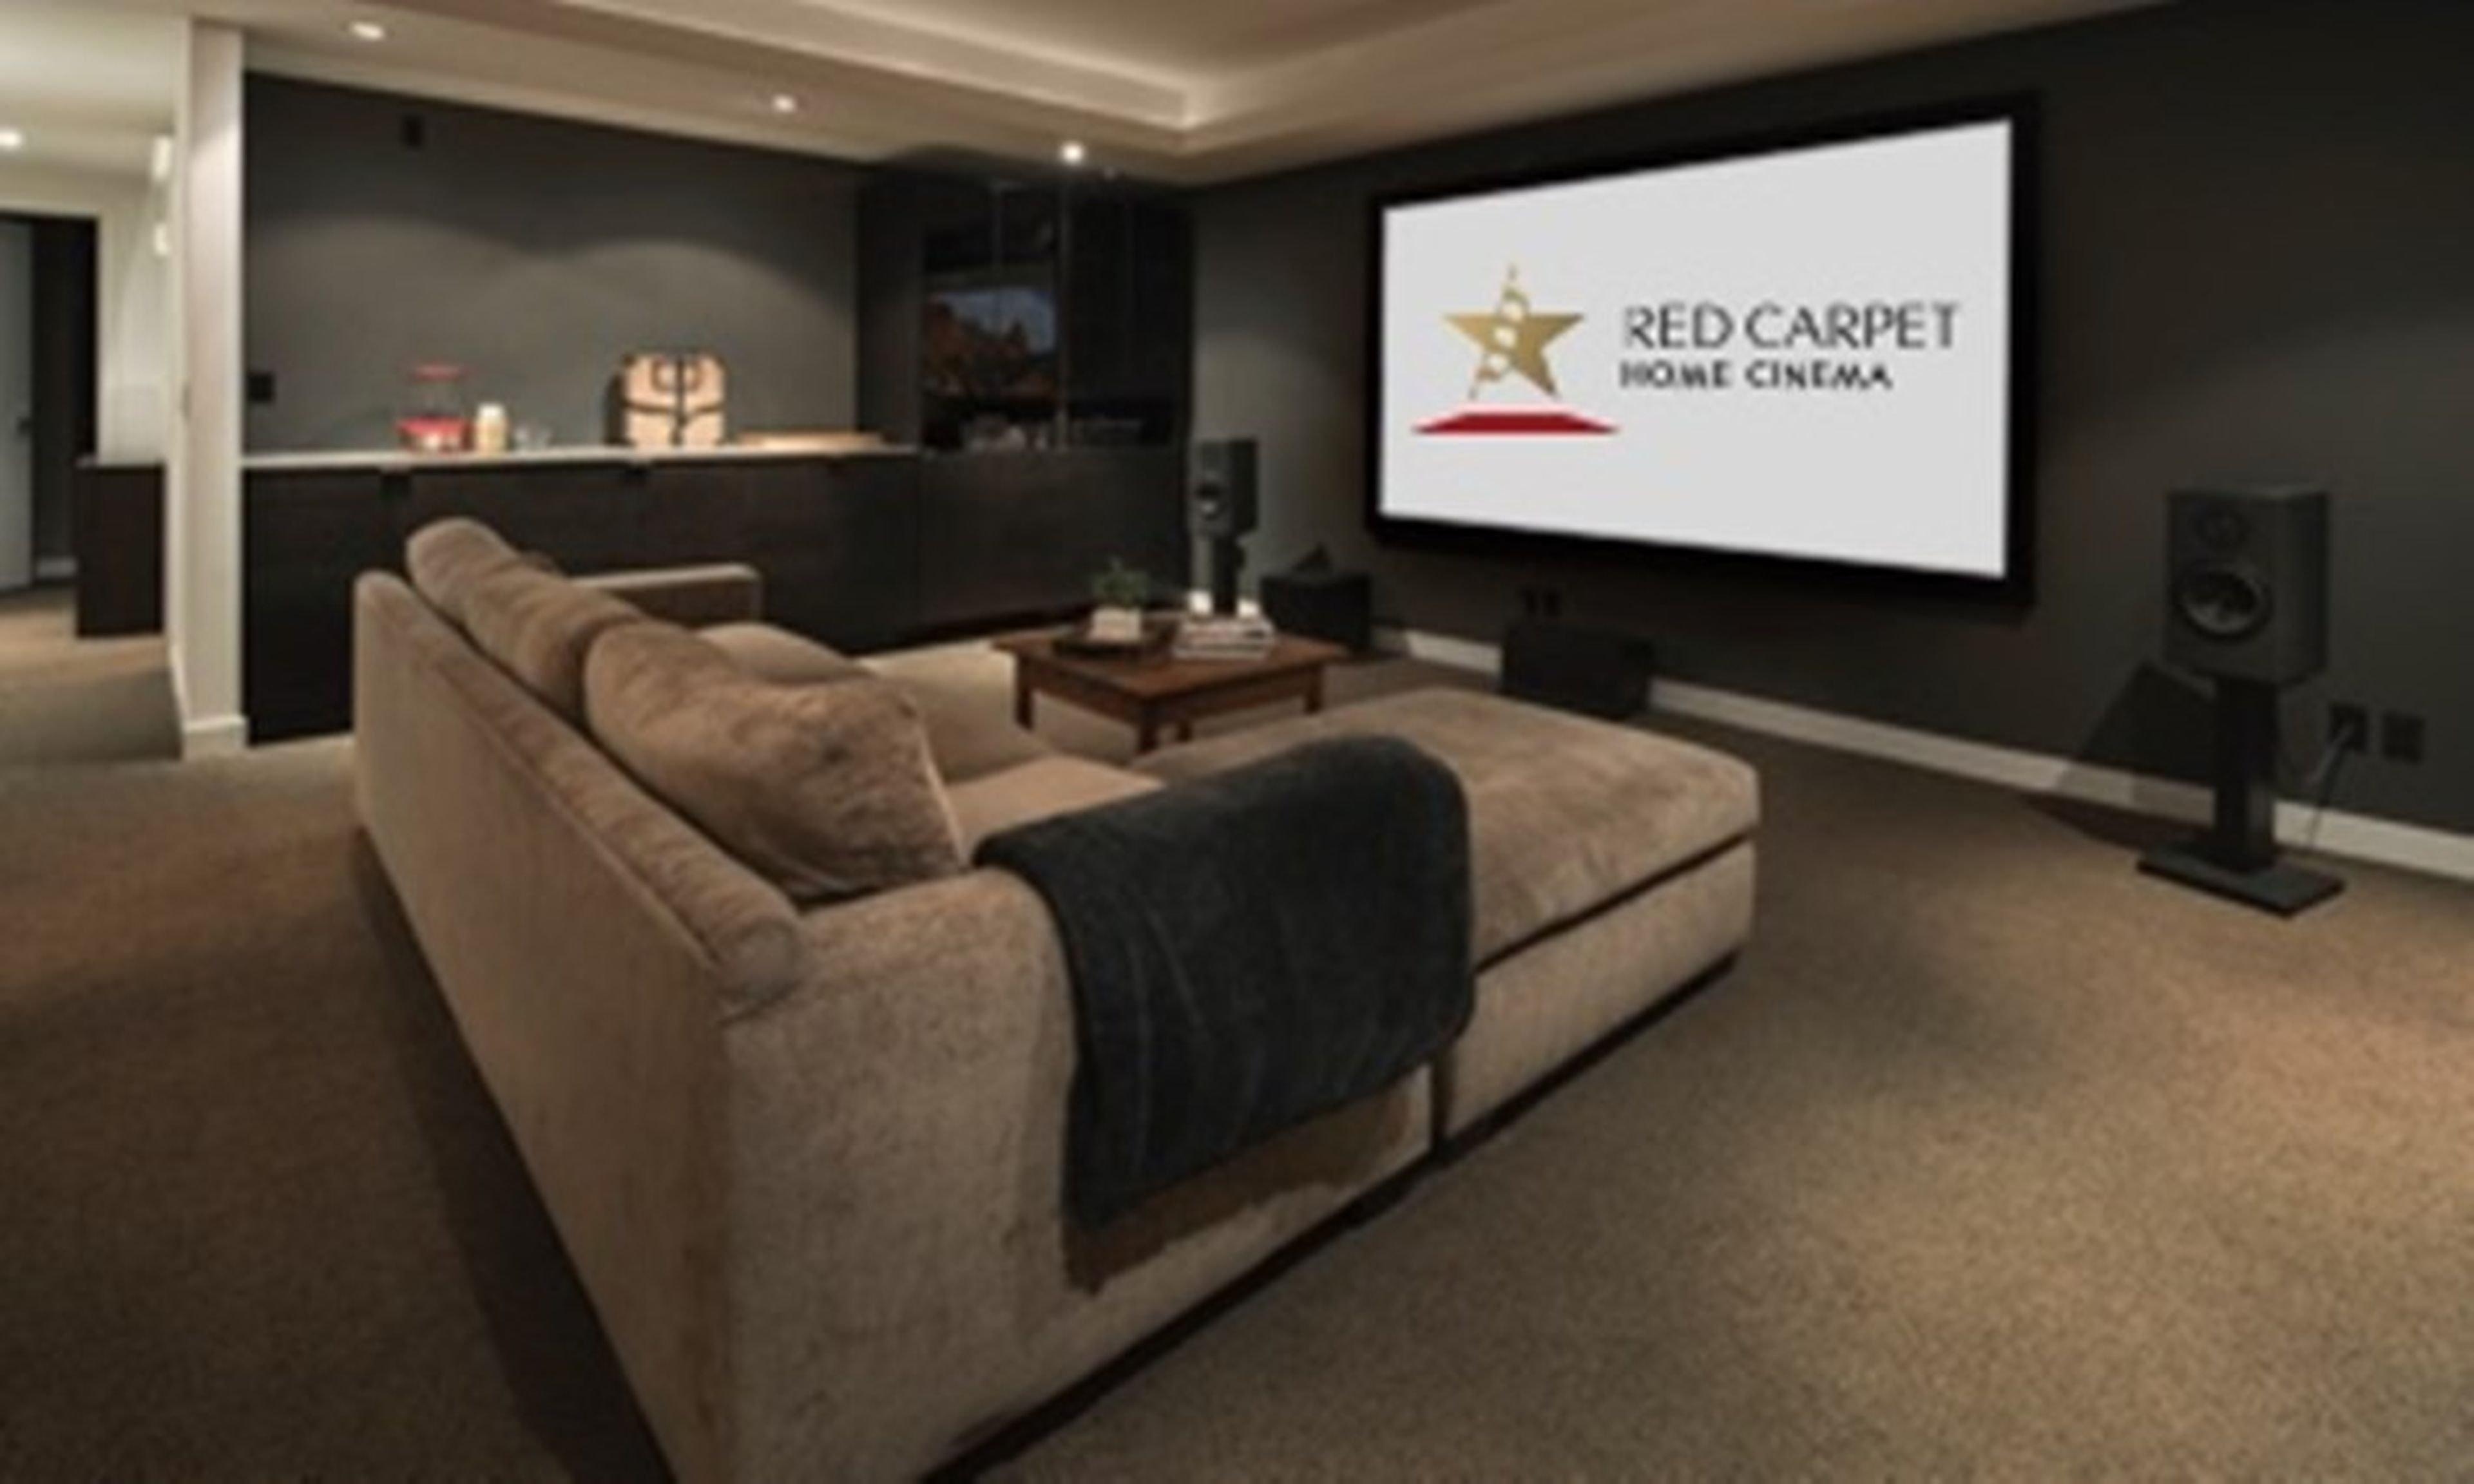 Red Carpet Home Cinema, el cine por streaming que cuesta 3000 dólares por película